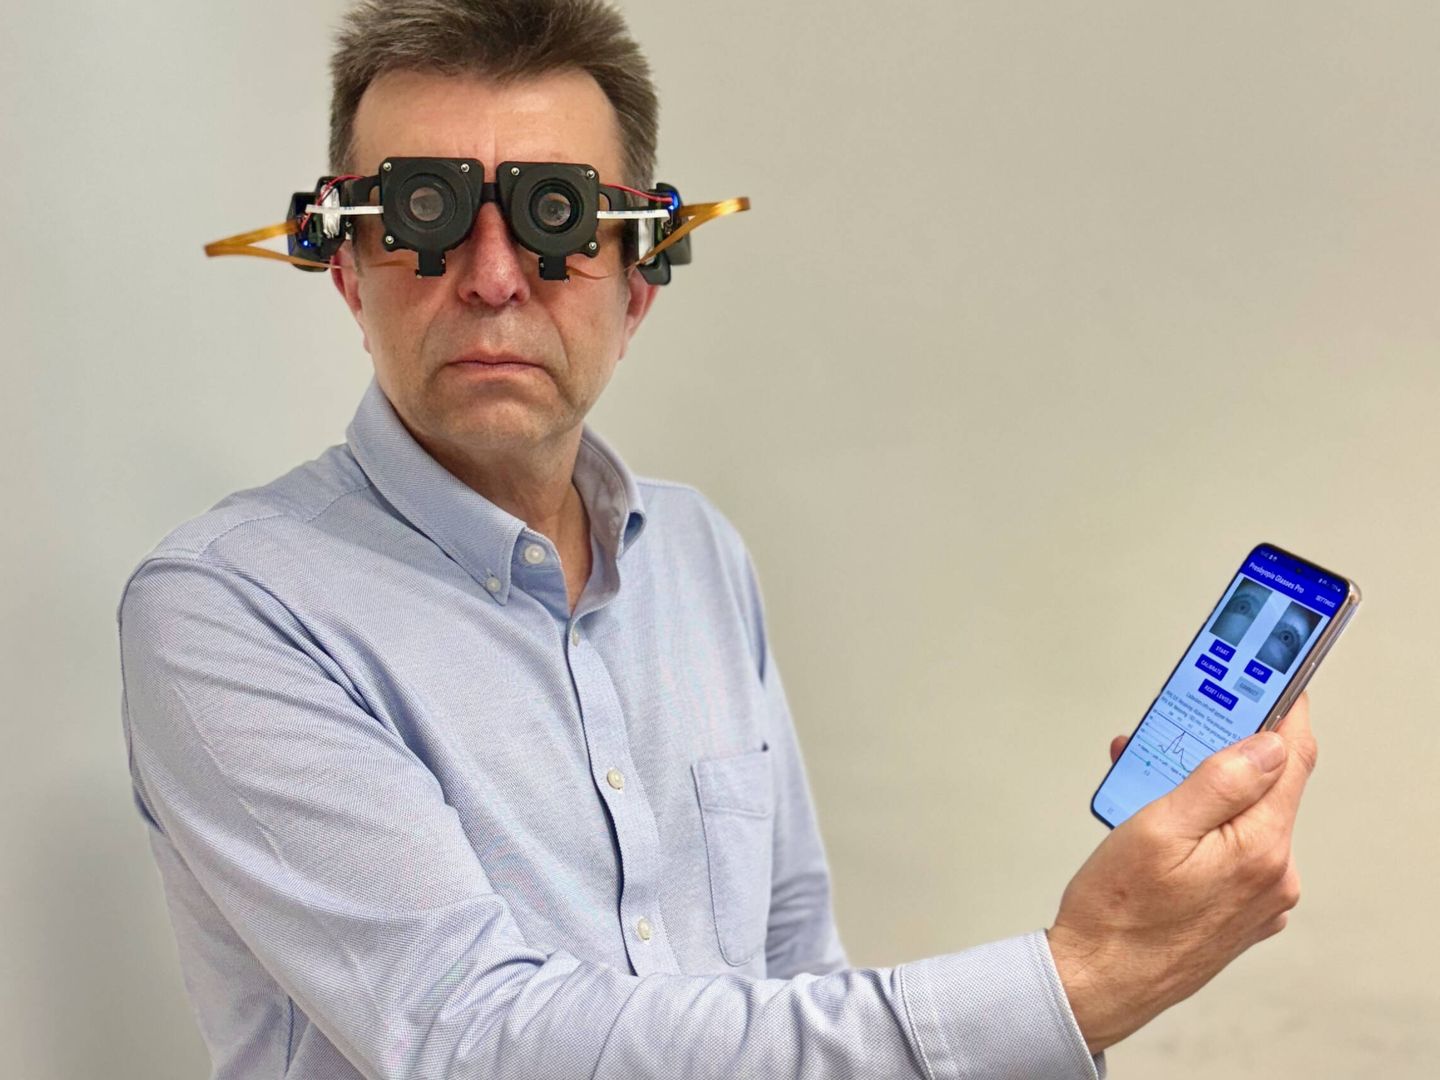 El catedrático Pablo Artal con el prototipo de gafas optoelectrónicas desarrolladas en la Universidad de Murcia. (Cedida)